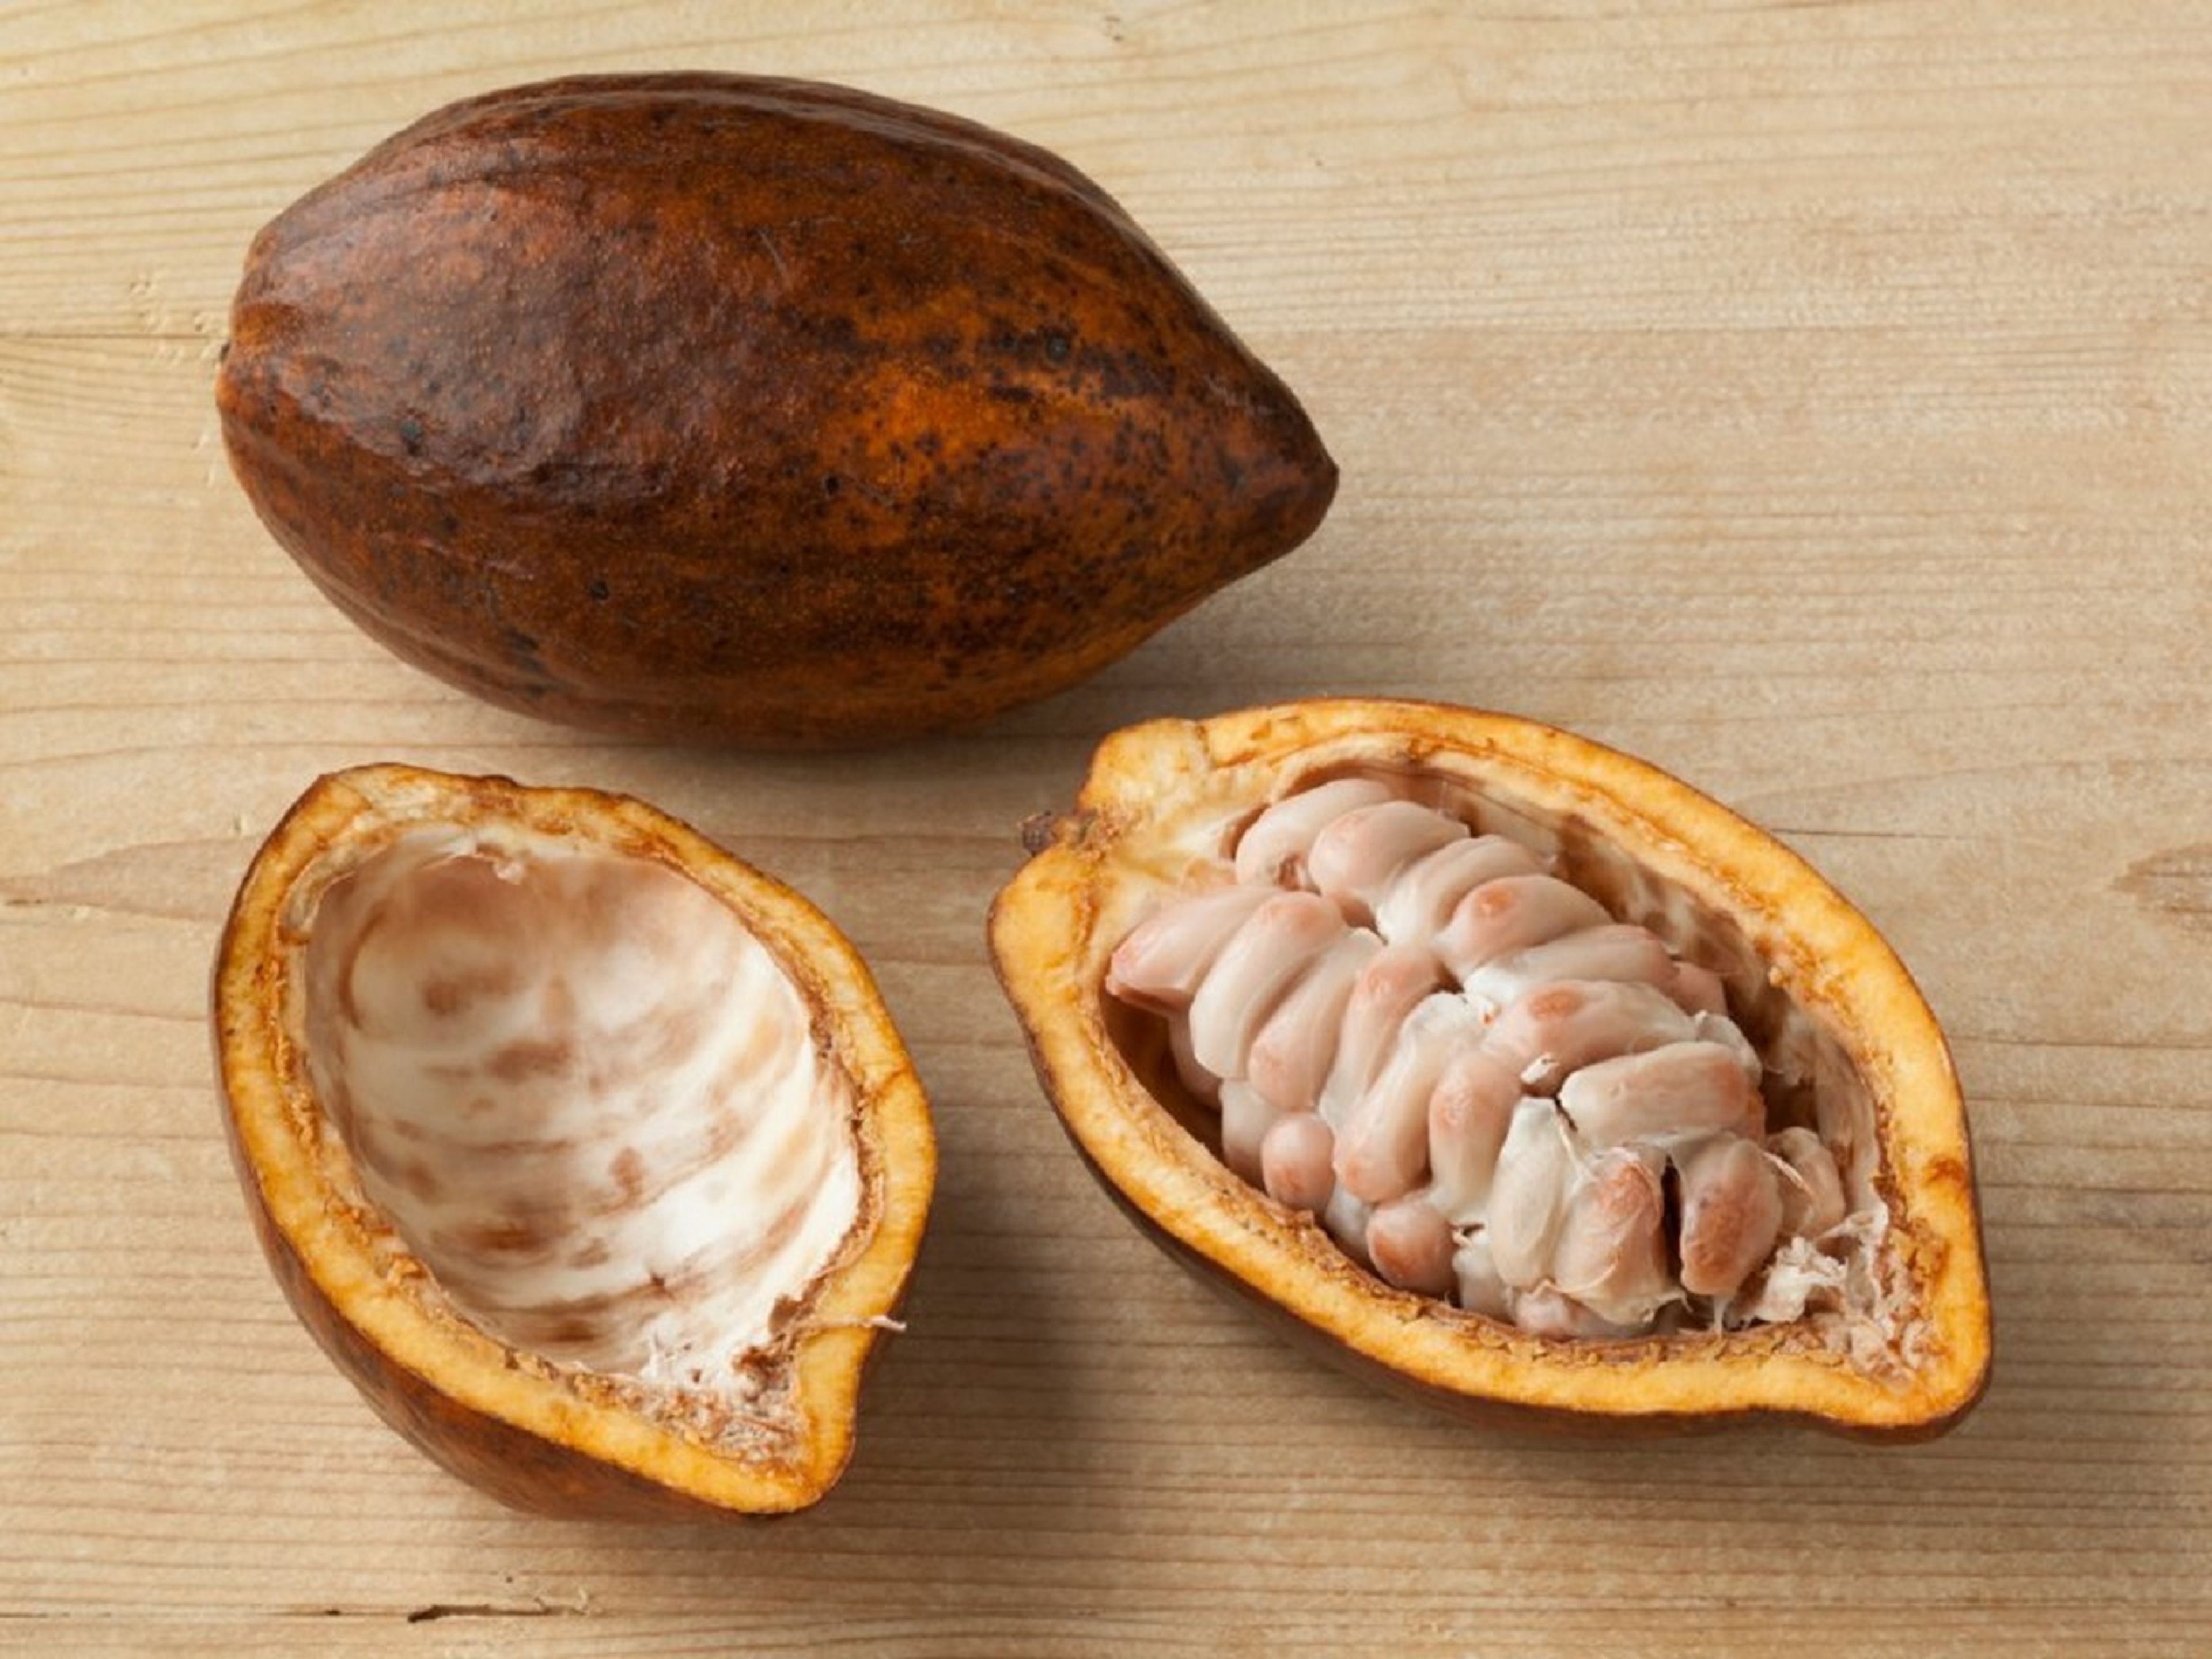 Las nuevas barras de chocolate sin azúcar se aprovecharán del sabor que aportan los granos de cacao y dulzura de la pulpa de cacao blanco, que proviene de la fruta de cacao